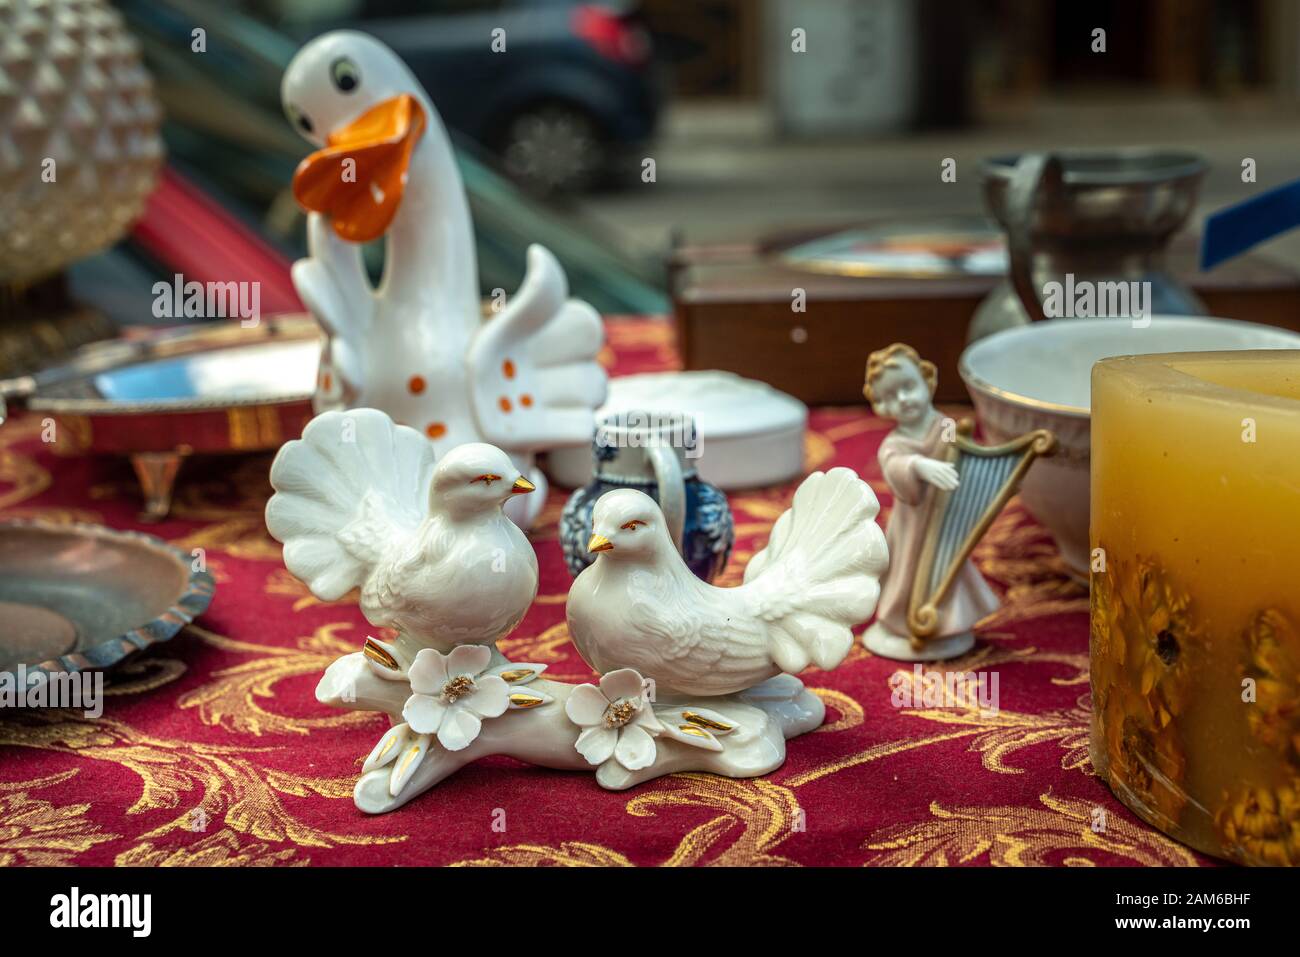 two ceramic doves in flea market Stock Photo